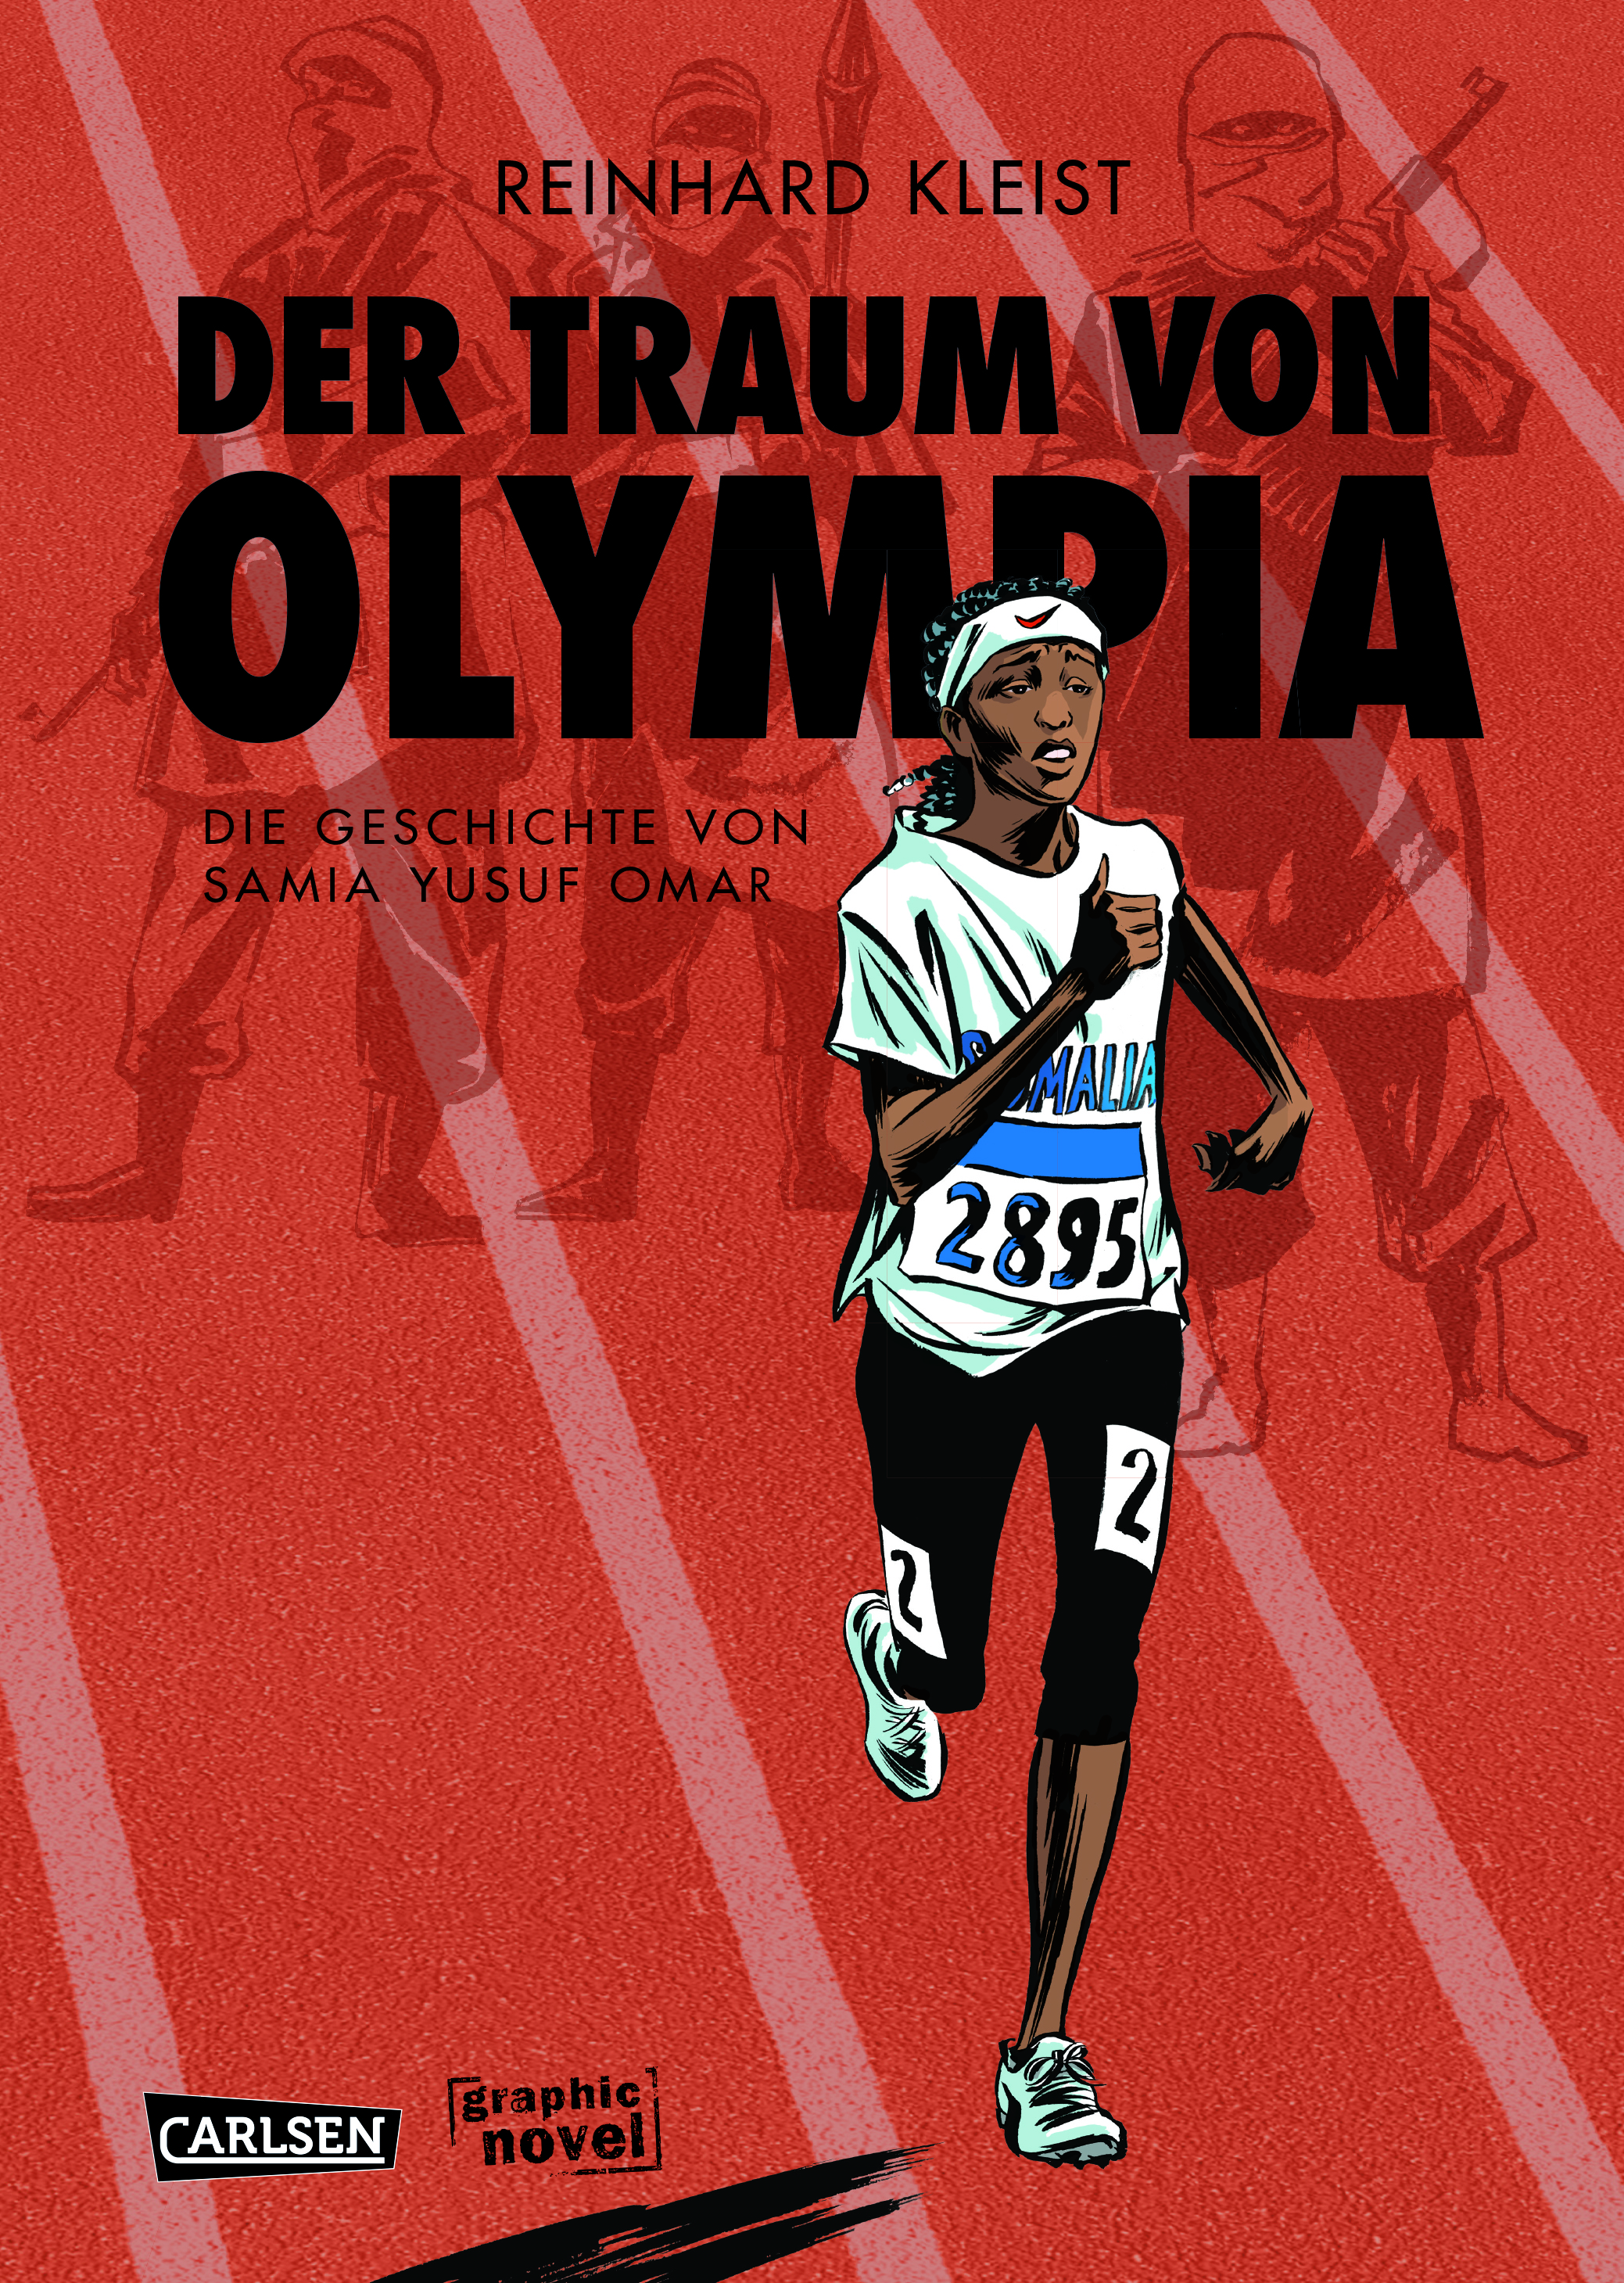 Cover von Reinhard Kleists Graphic Novel "Der Traum von Olympia - Die Geschichte von Samia Yusuf Omar", Verlag: Carlsen